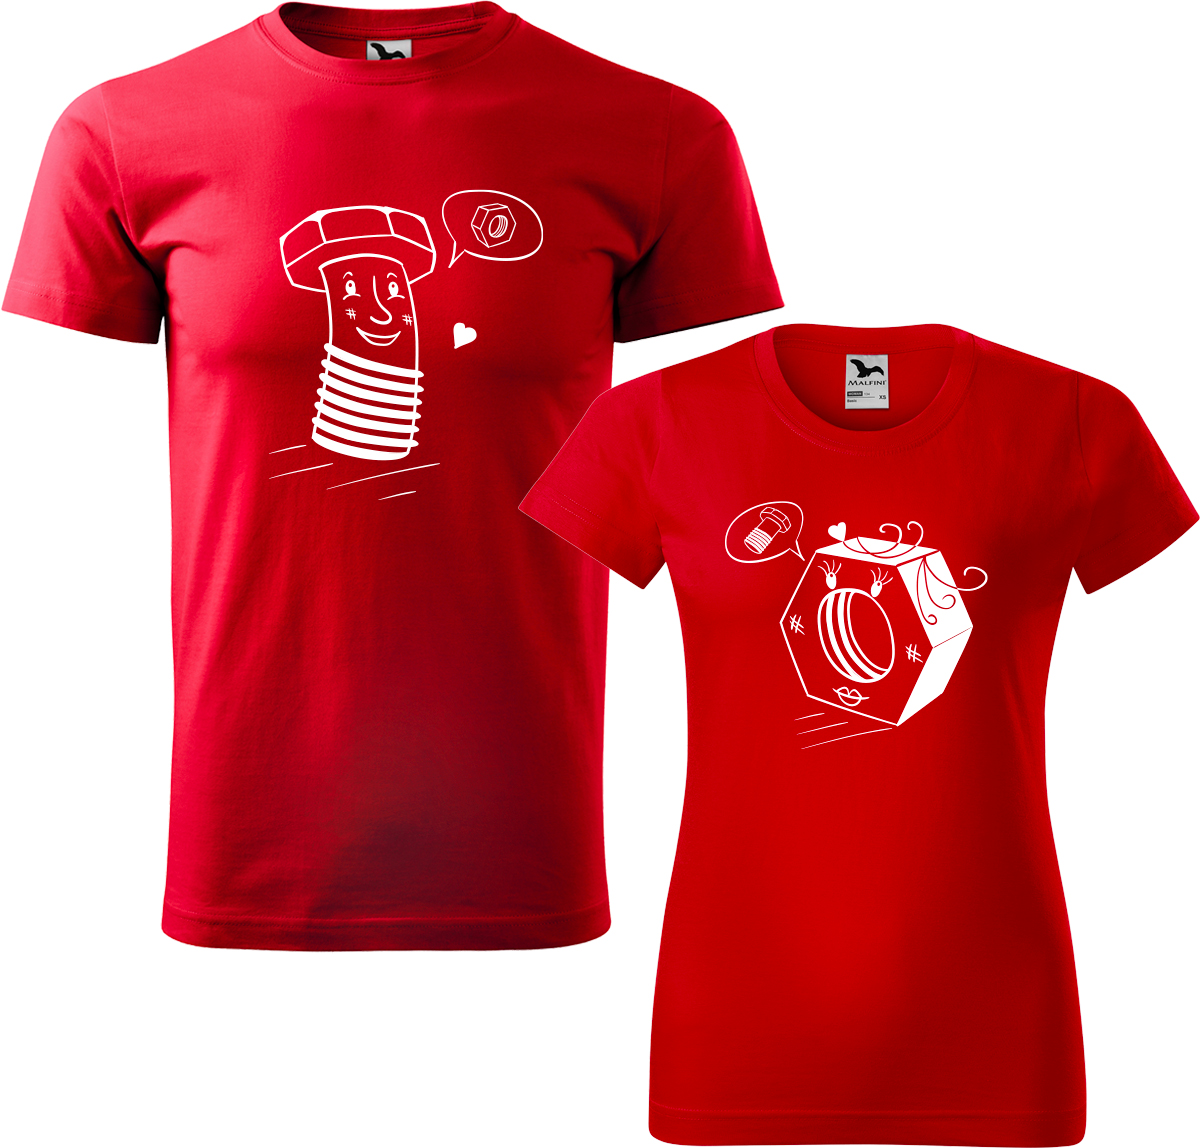 Trička pro páry - Šroubek a matička Barva: Červená (07), Velikost dámské tričko: S, Velikost pánské tričko: L